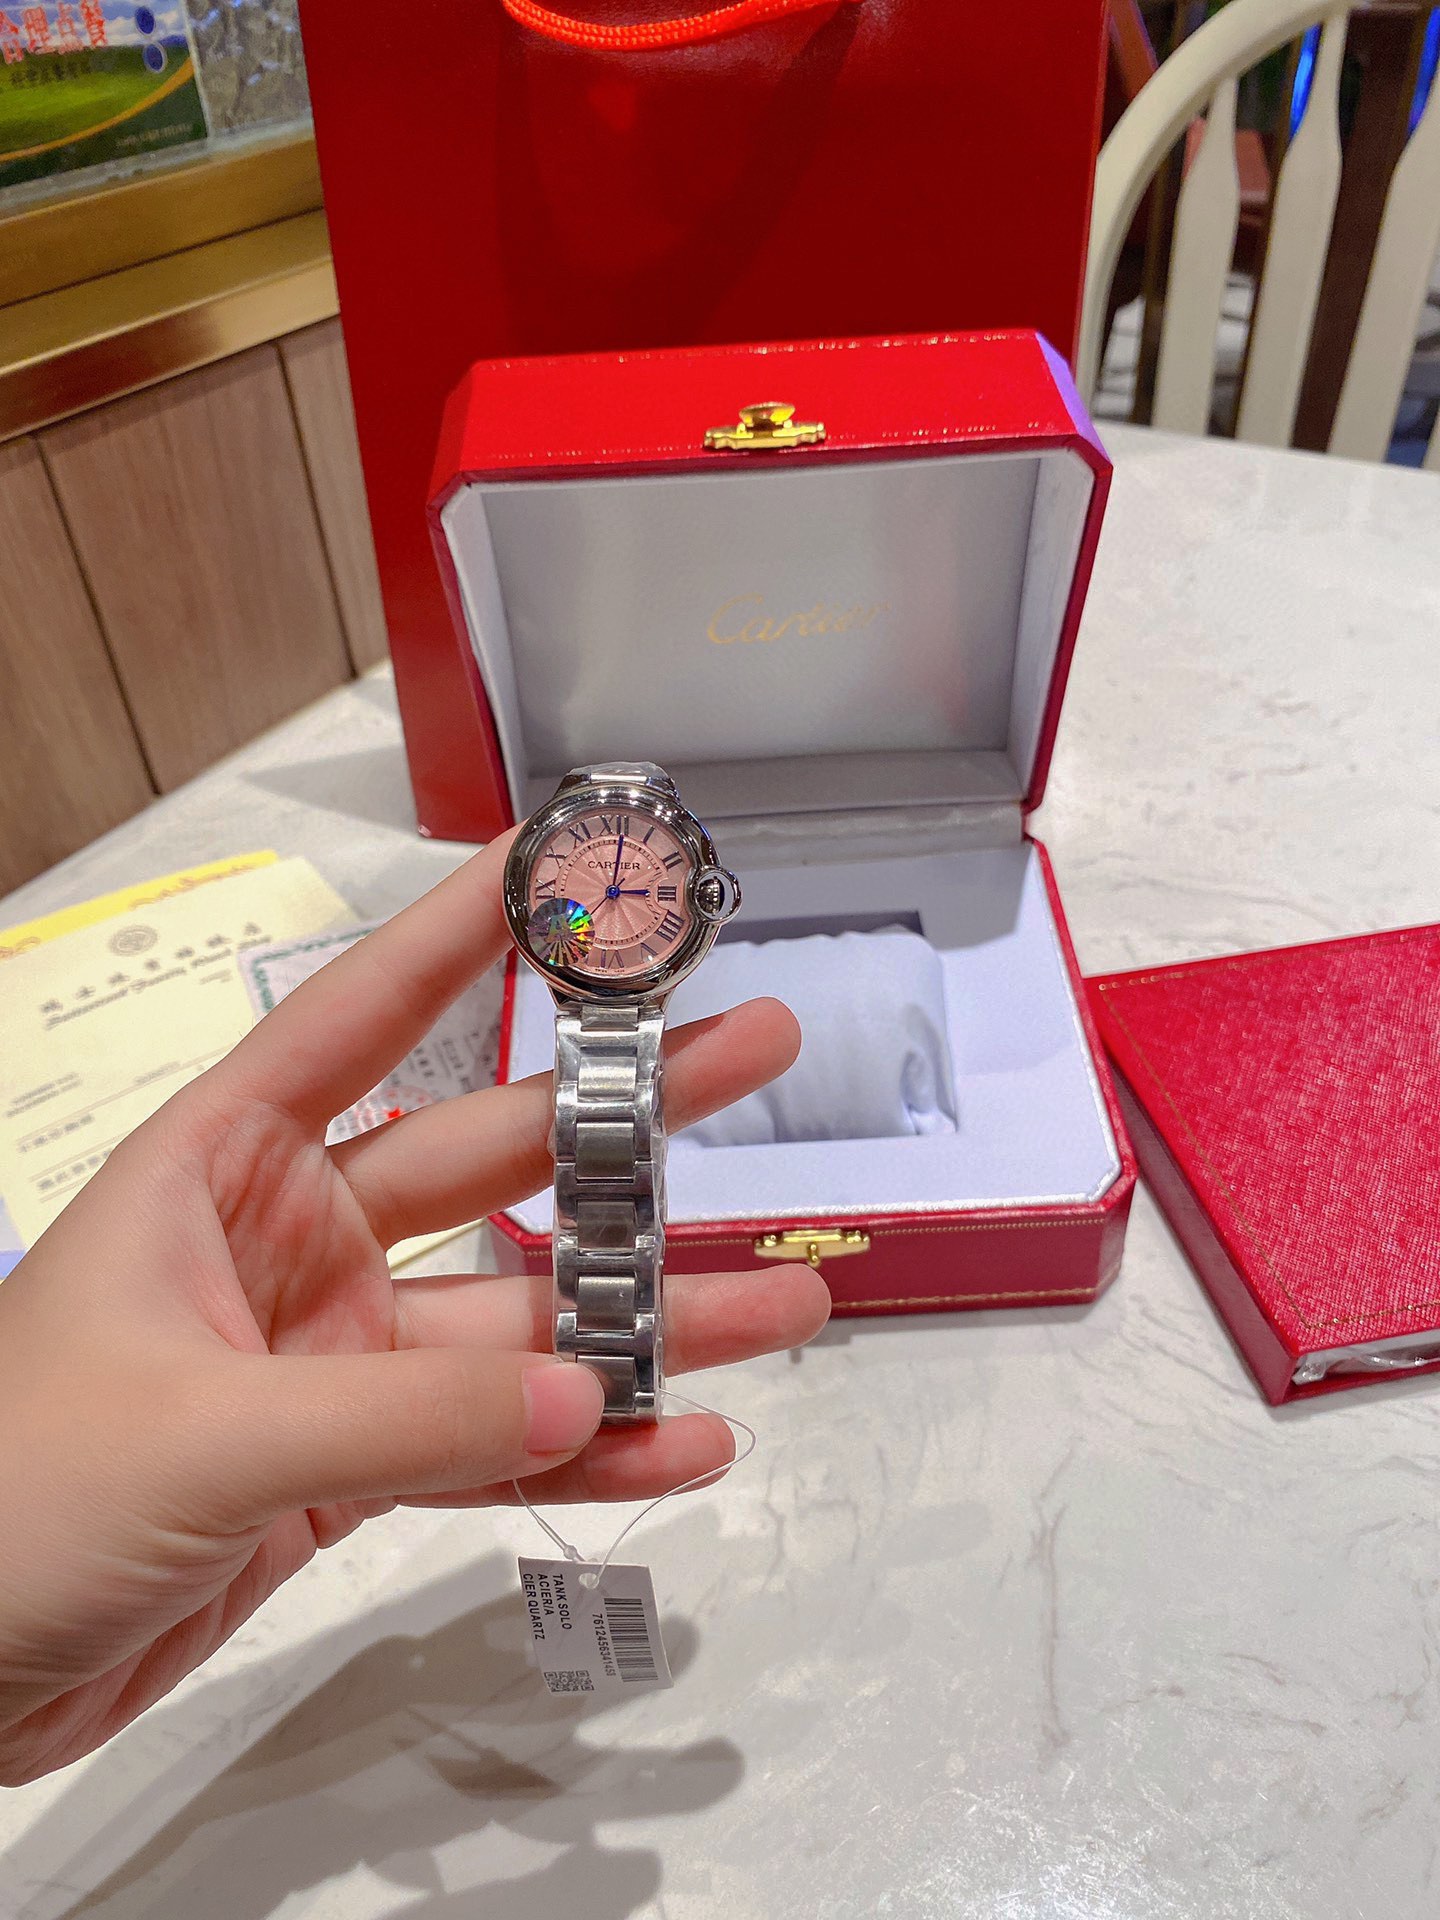 CARTIERカルティエみたいな時計偽物 フランス 薄い Cartier  腕時計 スチールバンド ピンク_1